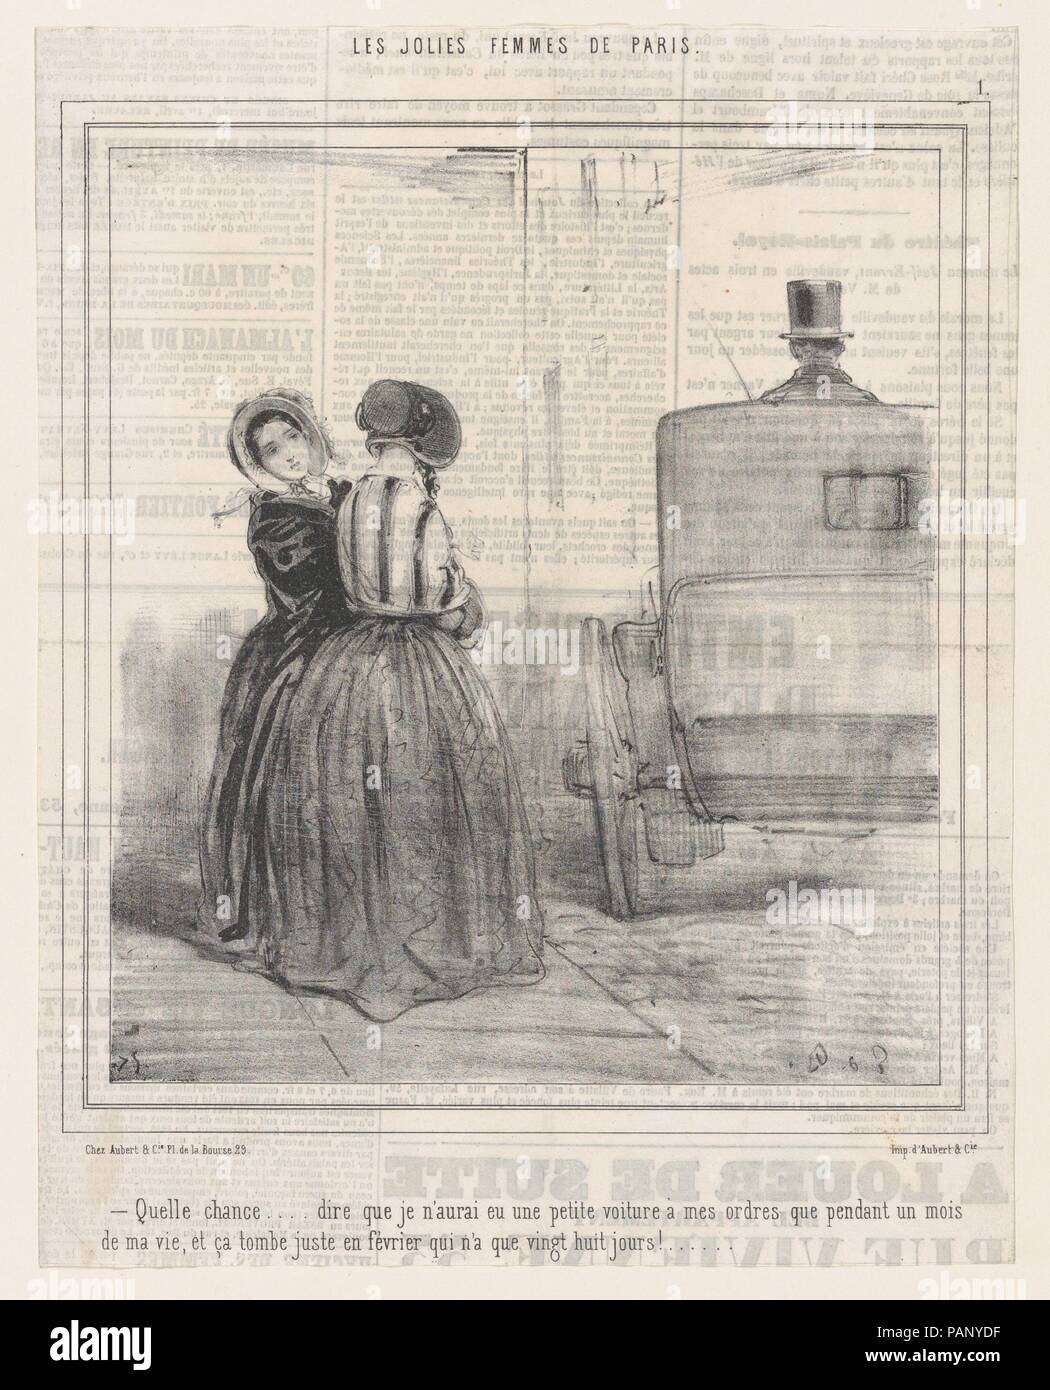 The Pretty Women of Paris. Artist: Édouard de Beaumont (French, Lannion 1821-1888 Paris). Dimensions: Sheet: 8 5/16 × 10 9/16 in. (21.1 × 26.8 cm)  Image: 8 in. × 7 1/16 in. (20.3 × 17.9 cm). Printer: Aubert et Cie. Publisher: Aubert et Cie. Series/Portfolio: Les Jolies Femmes de Paris. Date: 1845-46. Museum: Metropolitan Museum of Art, New York, USA. Stock Photo